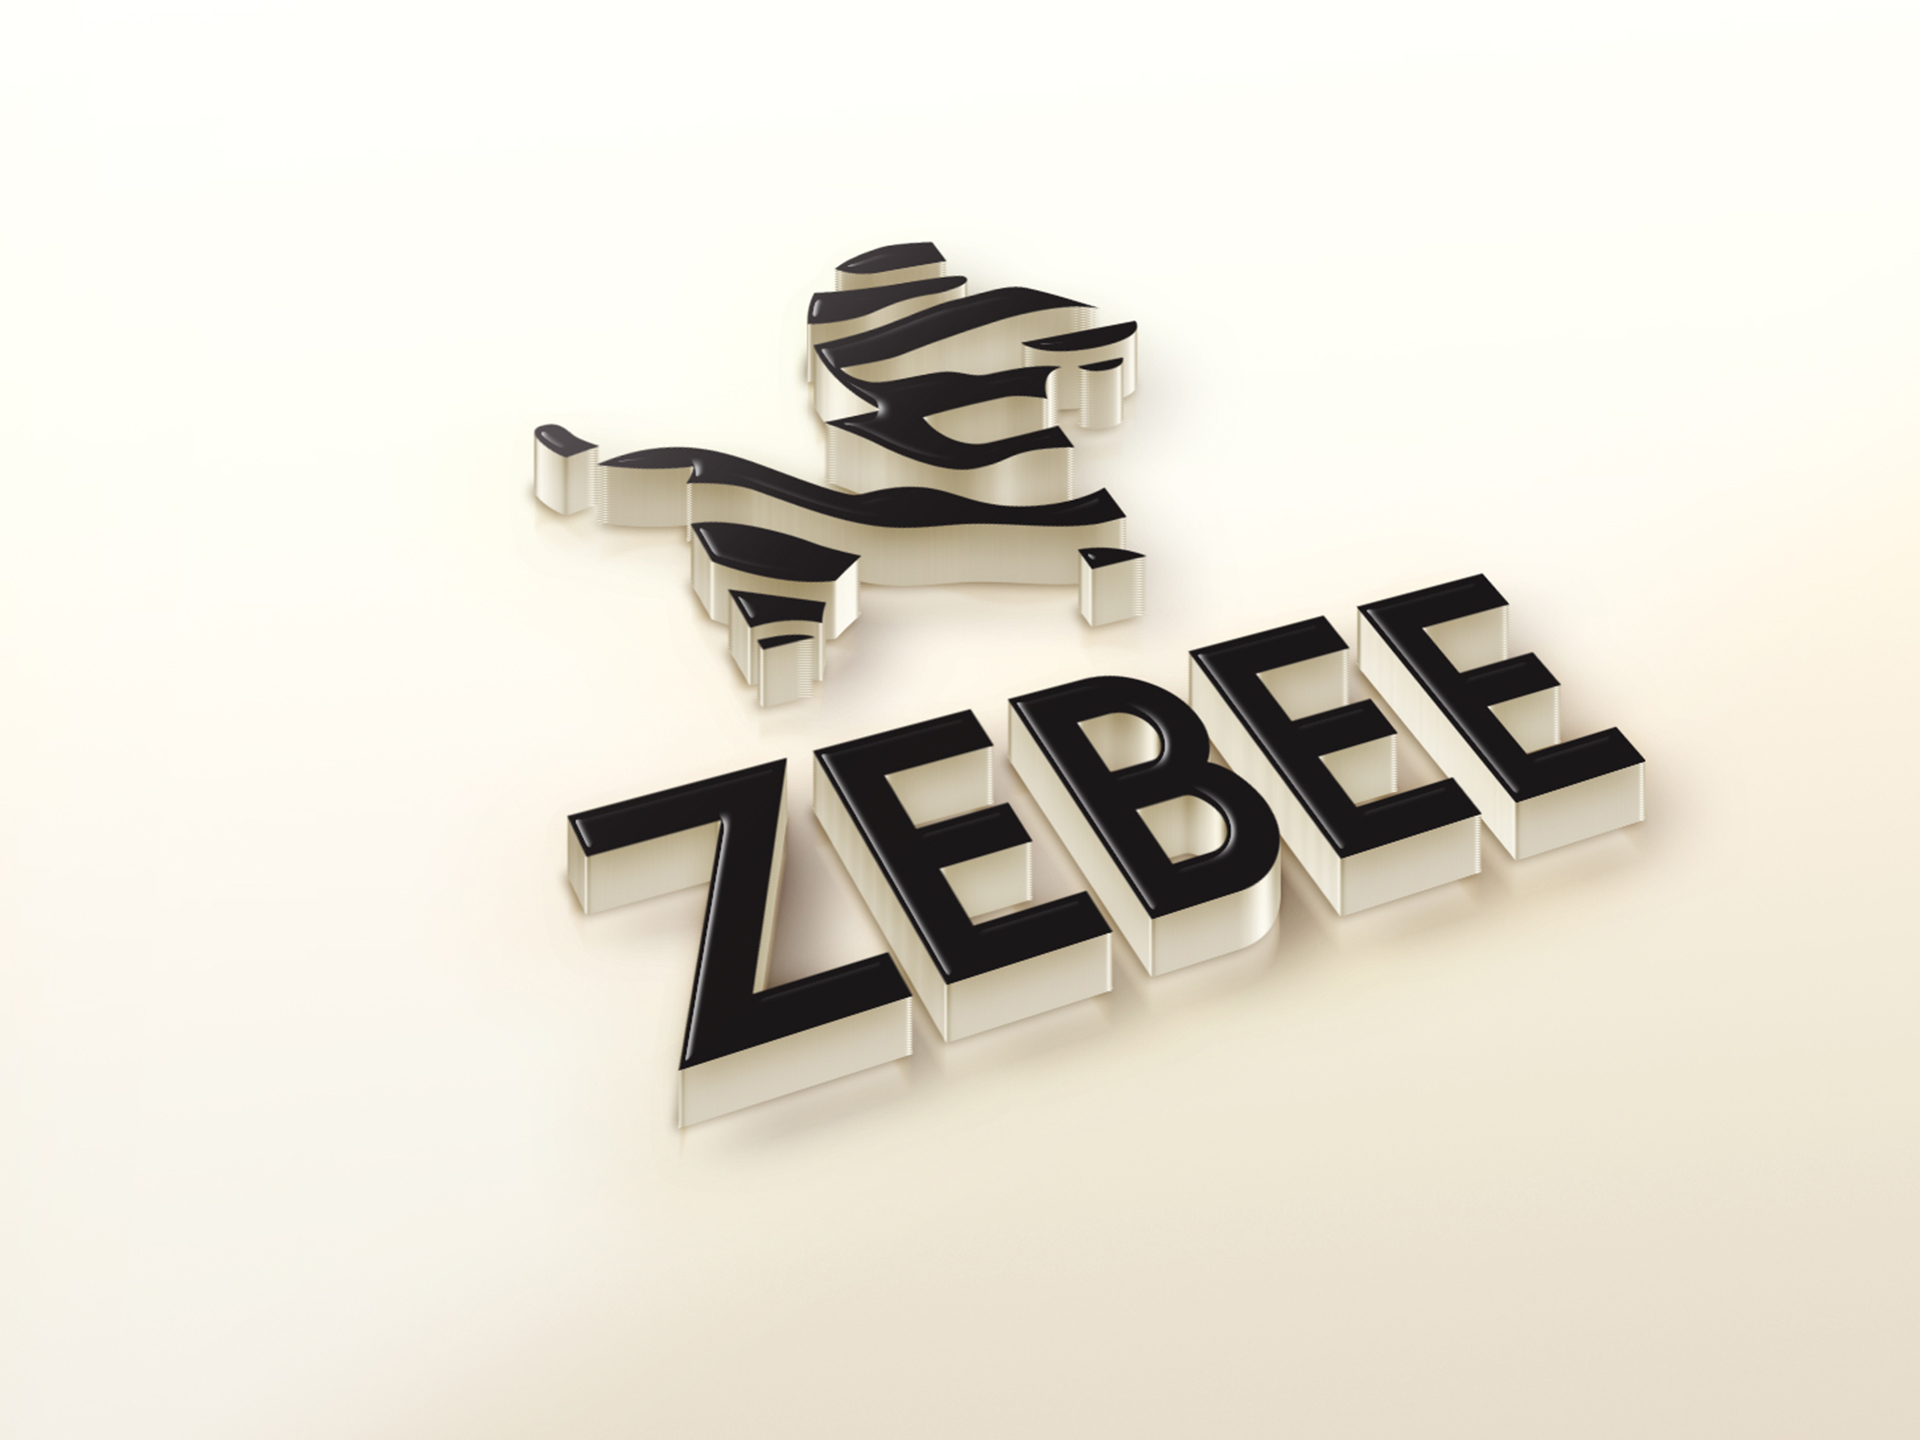 Thiết kế logo thương hiệu trà sữa Zebee tại Hà Nội, Hải Phòng